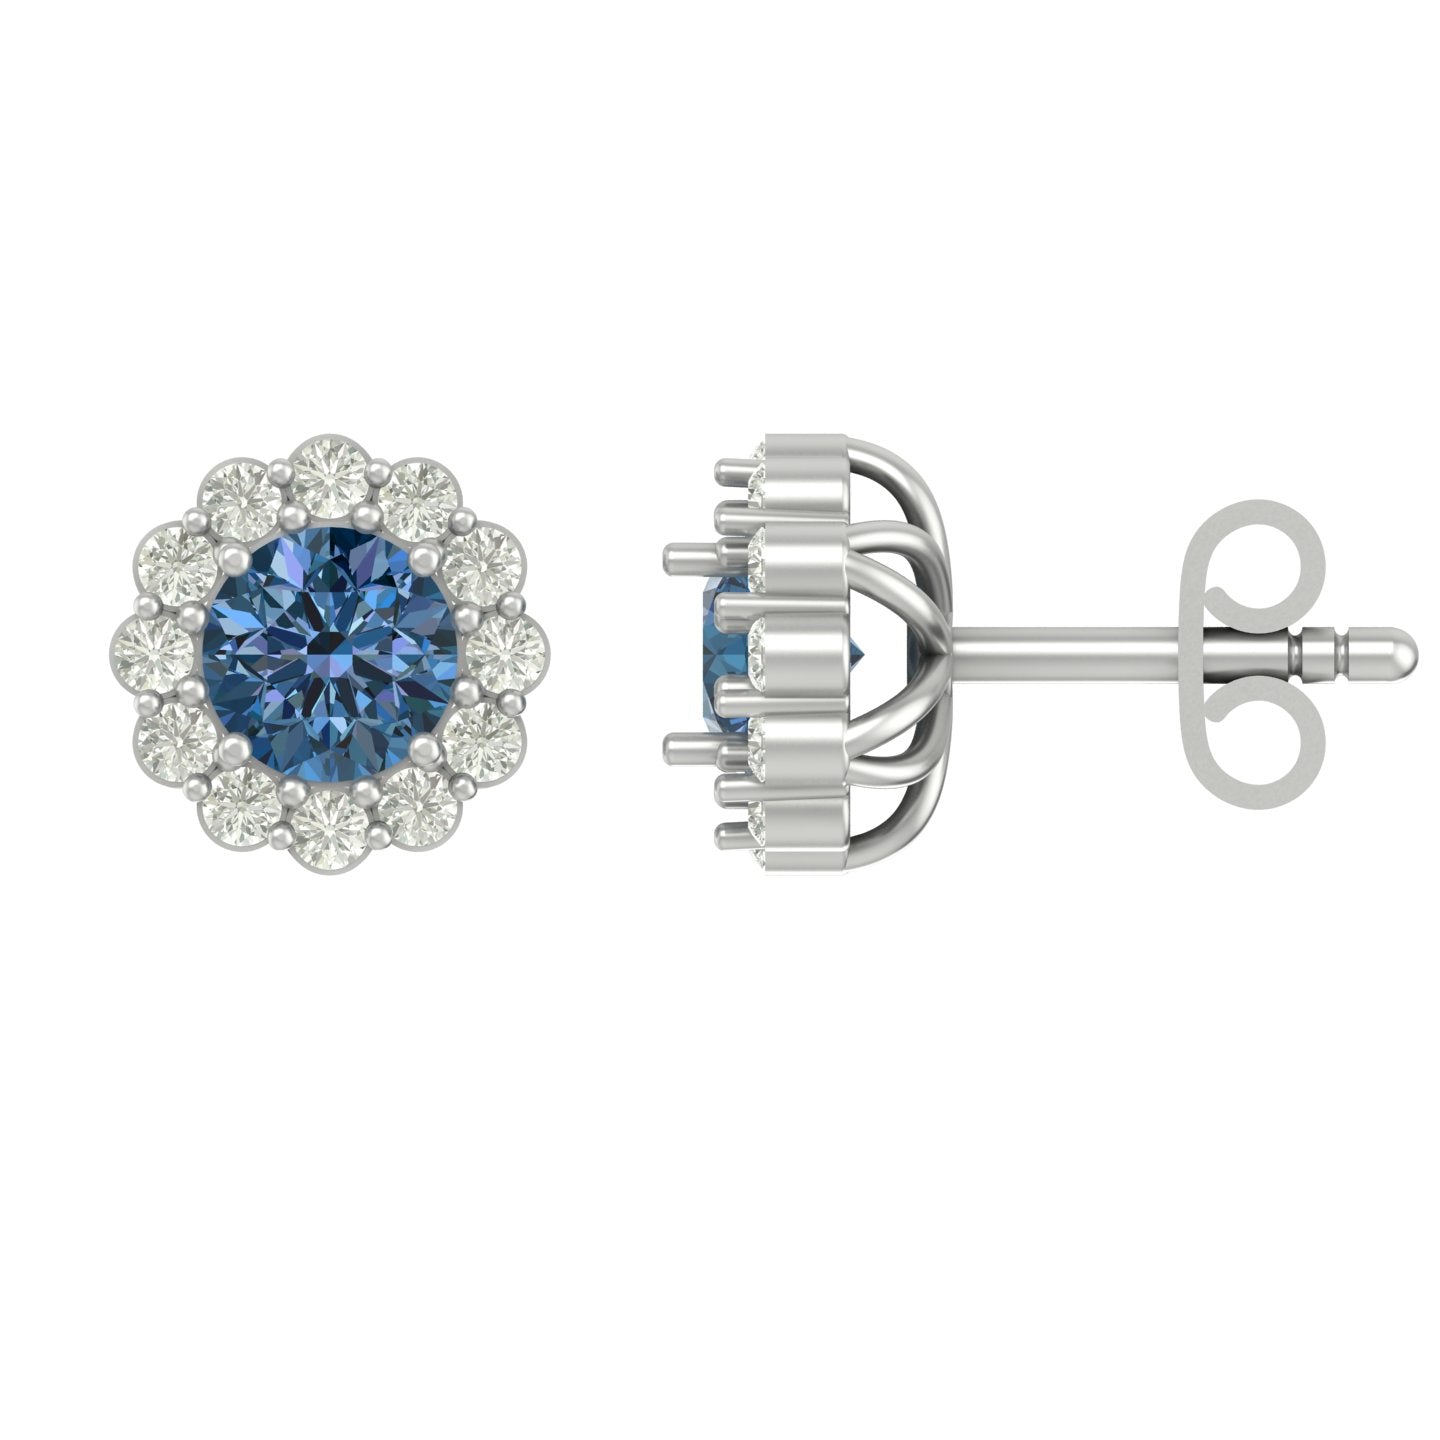 Tiaprism unique lab diamond earrings design